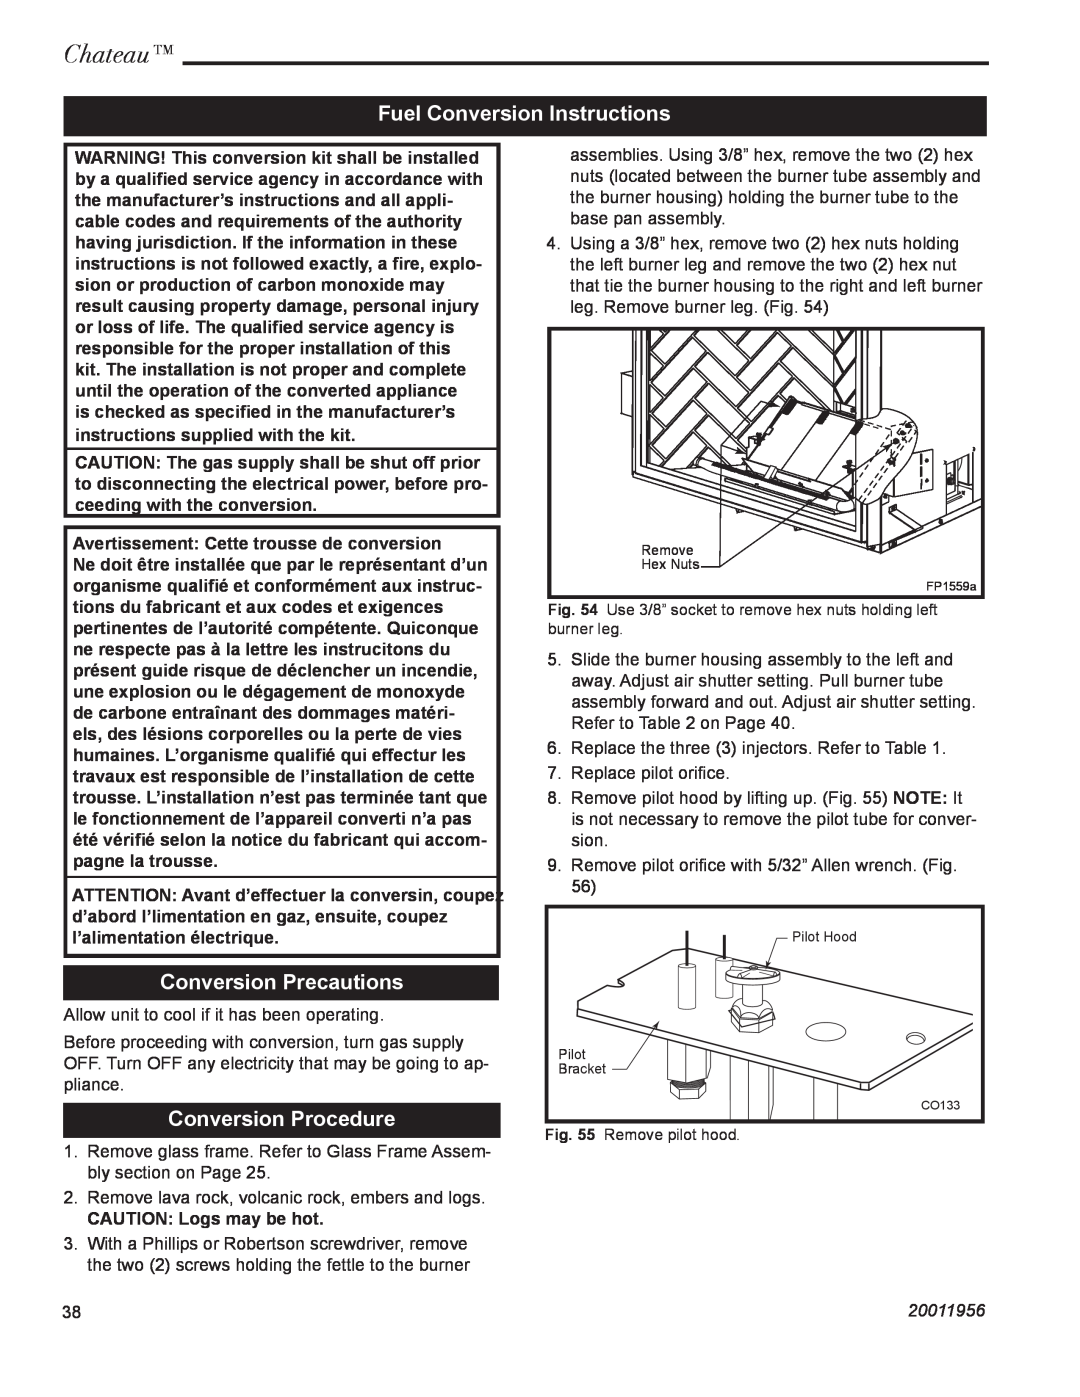 CFM Corporation DVT44IN Fuel Conversion Instructions, Conversion Precautions, Conversion Procedure, Chateau, 20011956 